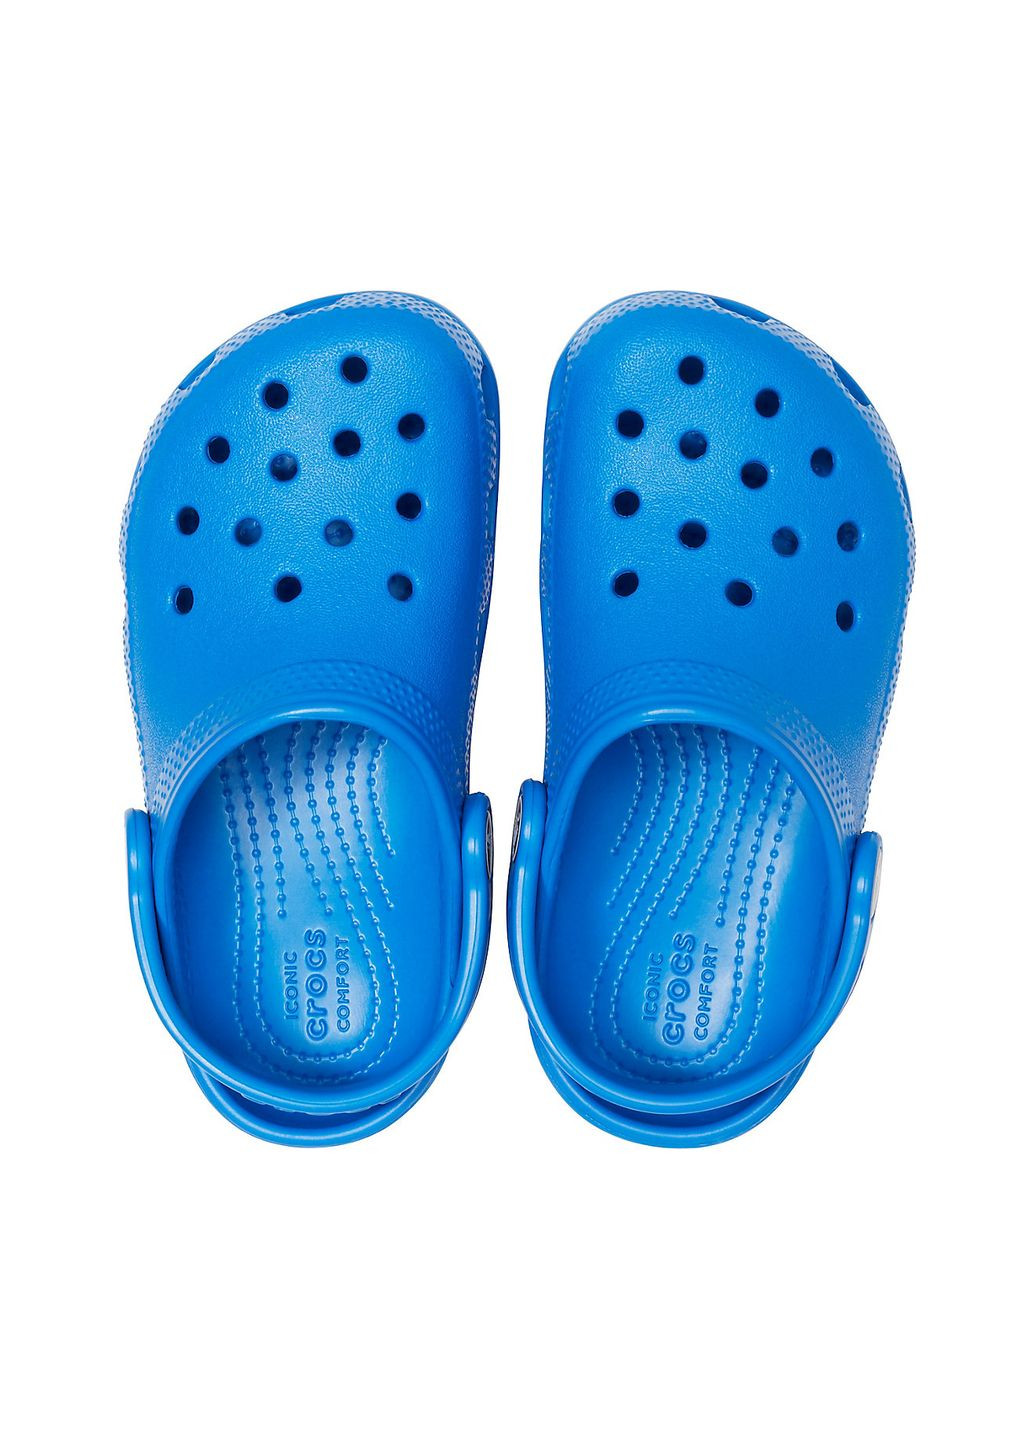 Синие сабо kids classic clog blue bolt c8\25\15.5 см 206991 Crocs